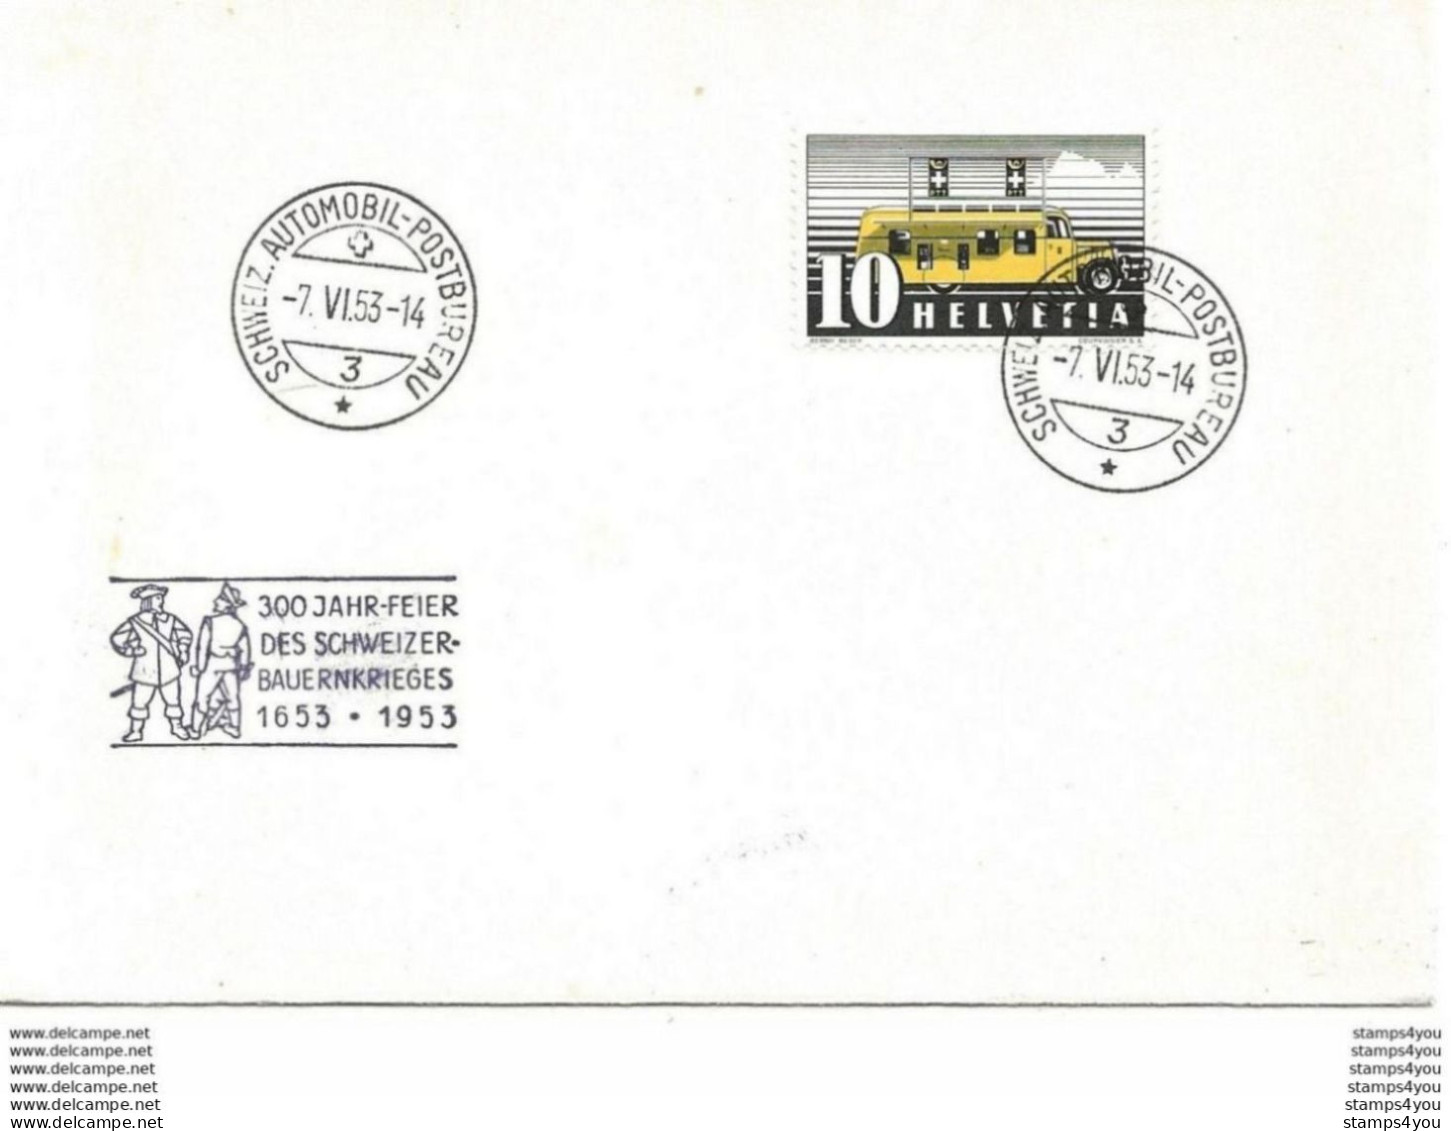 244 - 86 - Enveloppe Avec Oblit Spéciale "300 Jahr-Fest Des Schweizer-Bauernkriefes 1953" - Marcofilie